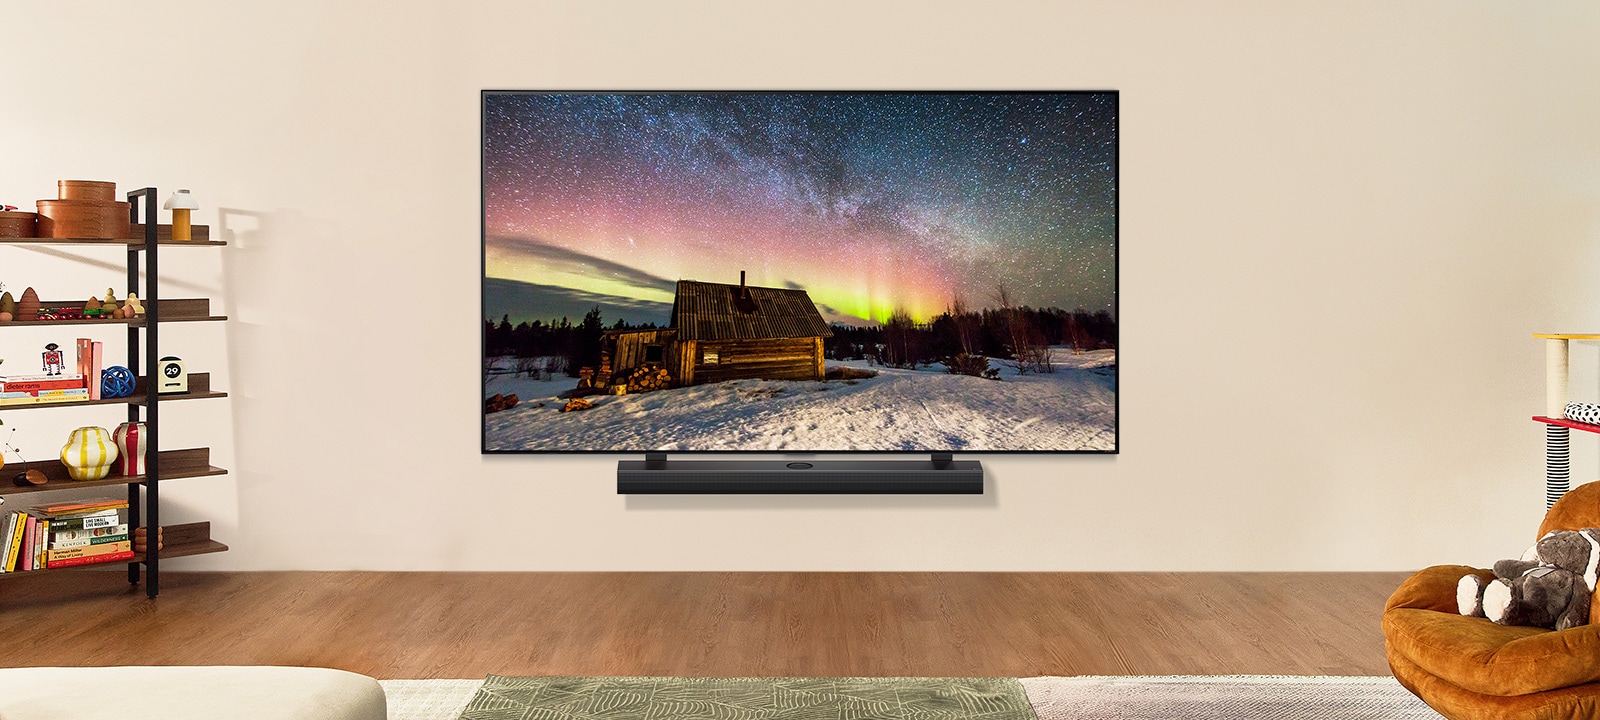 LG TV e LG Soundbar num espaço habitacional moderno durante o dia. A imagem do ecrã da aurora boreal é exibida com os níveis de brilho ideais.